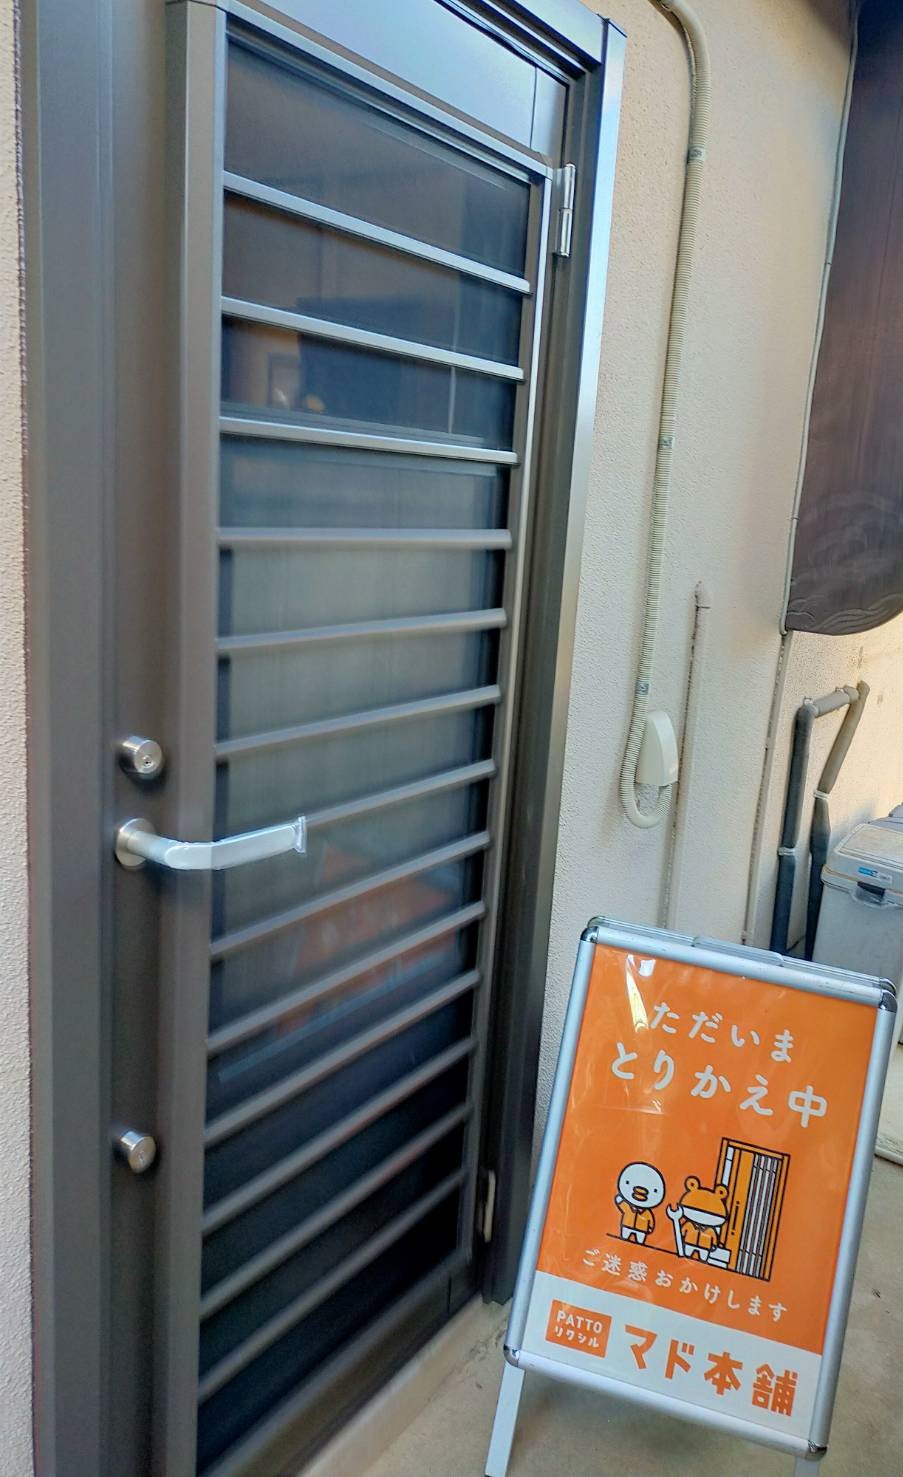 リシェント勝手口ドア設置 まどありー。太田店のブログ 写真1